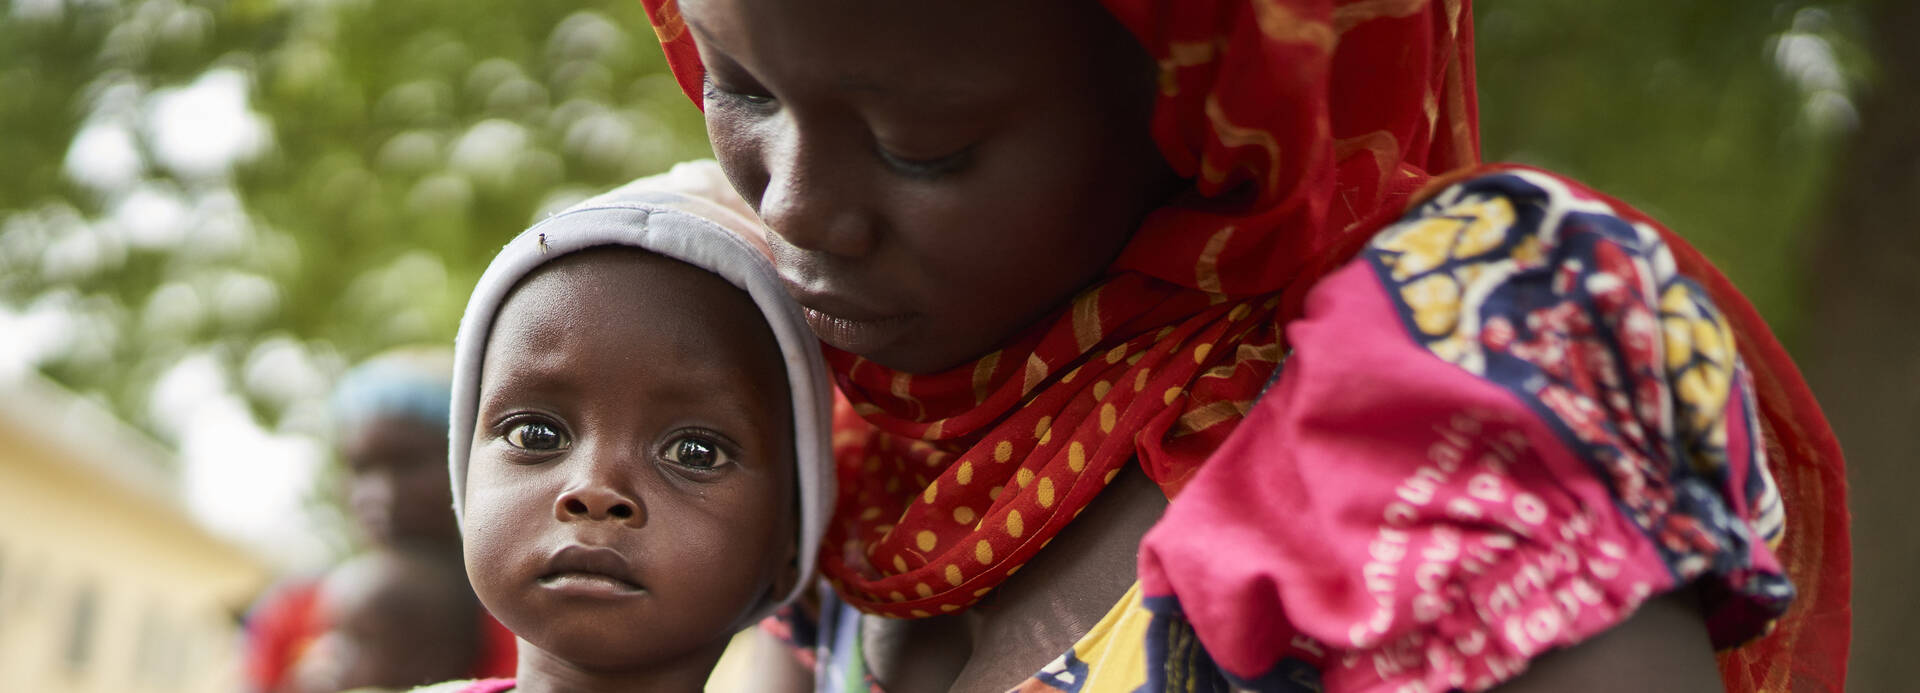 Mutter mit Kind in Nord-Kamerun